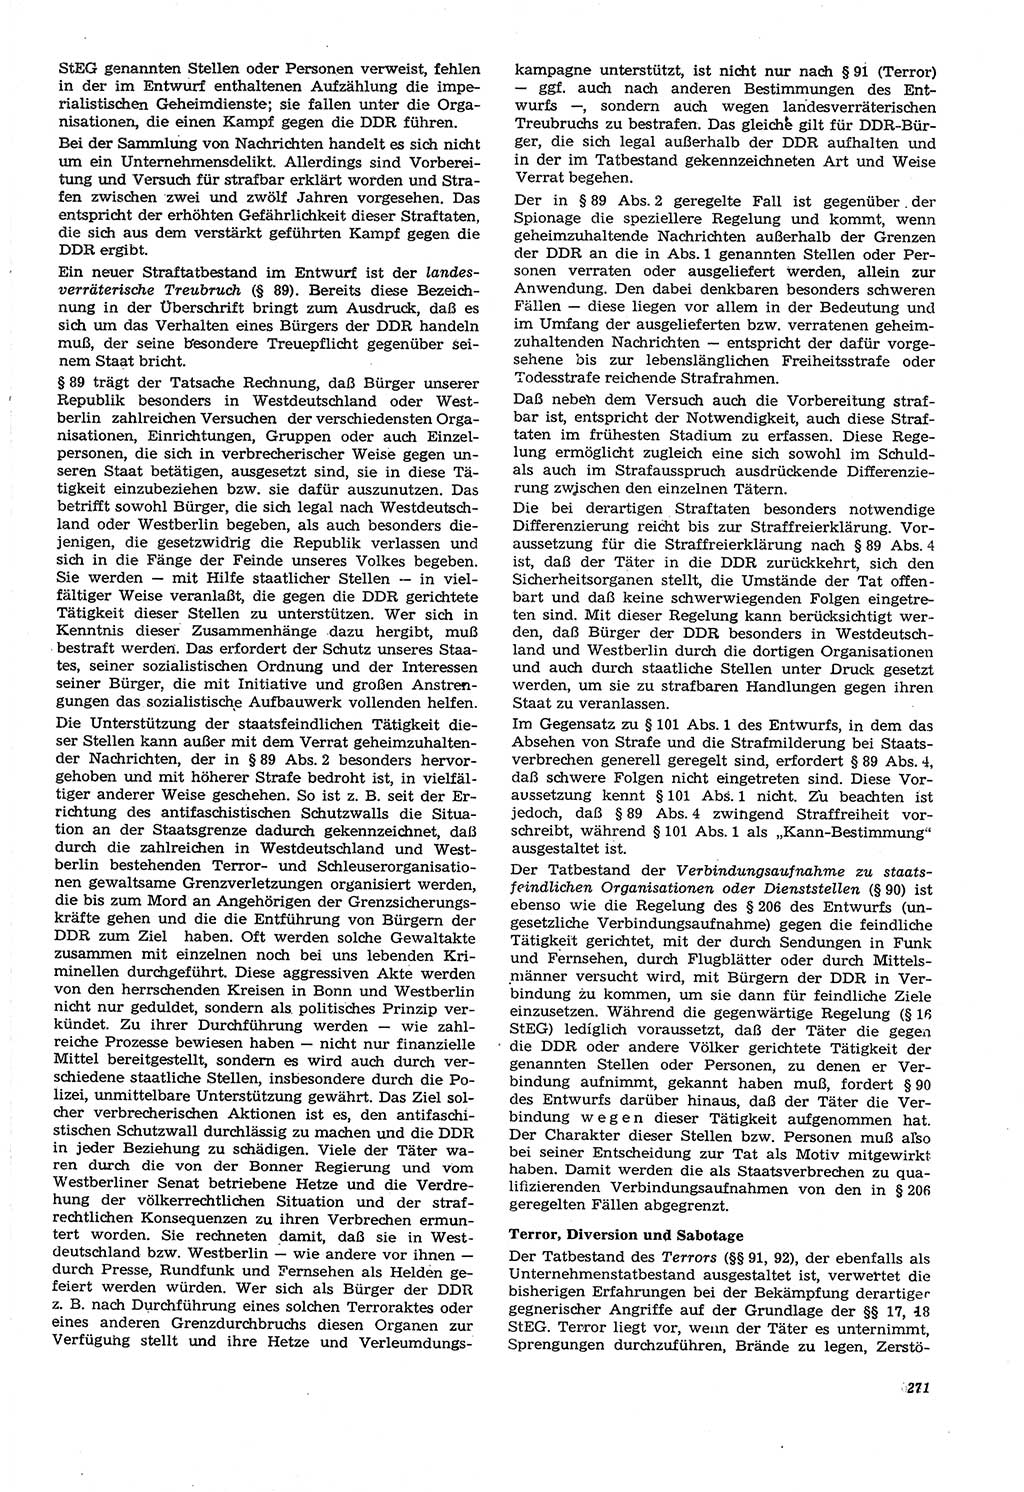 Neue Justiz (NJ), Zeitschrift für Recht und Rechtswissenschaft [Deutsche Demokratische Republik (DDR)], 21. Jahrgang 1967, Seite 271 (NJ DDR 1967, S. 271)